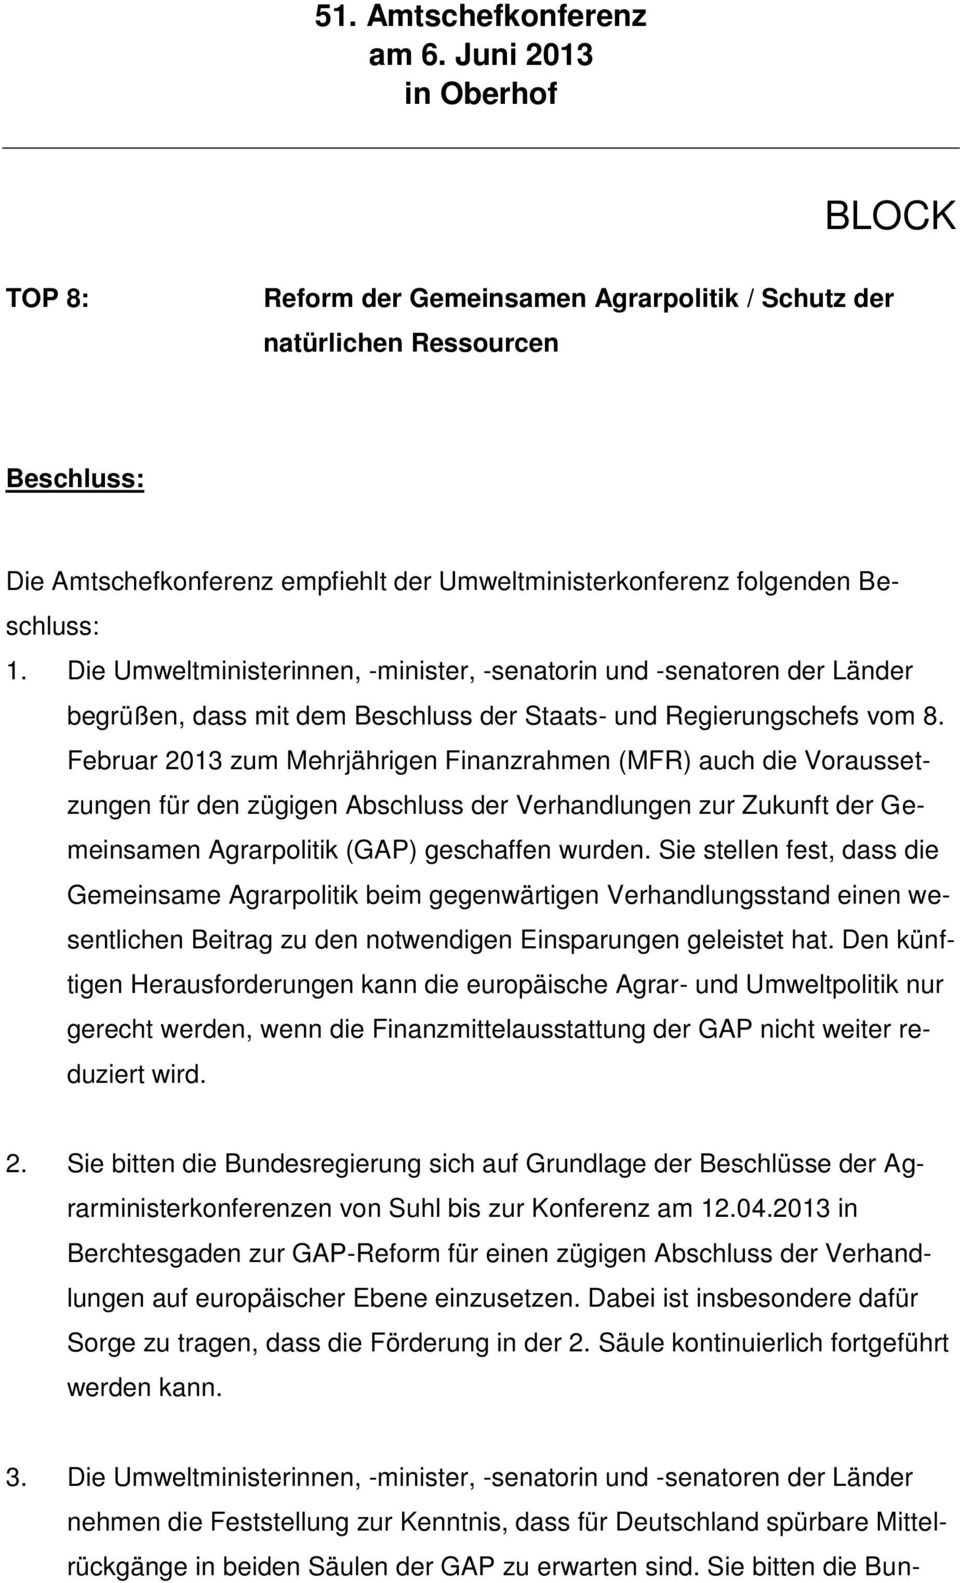 Februar 2013 zum Mehrjährigen Finanzrahmen (MFR) auch die Voraussetzungen für den zügigen Abschluss der Verhandlungen zur Zukunft der Gemeinsamen Agrarpolitik (GAP) geschaffen wurden.